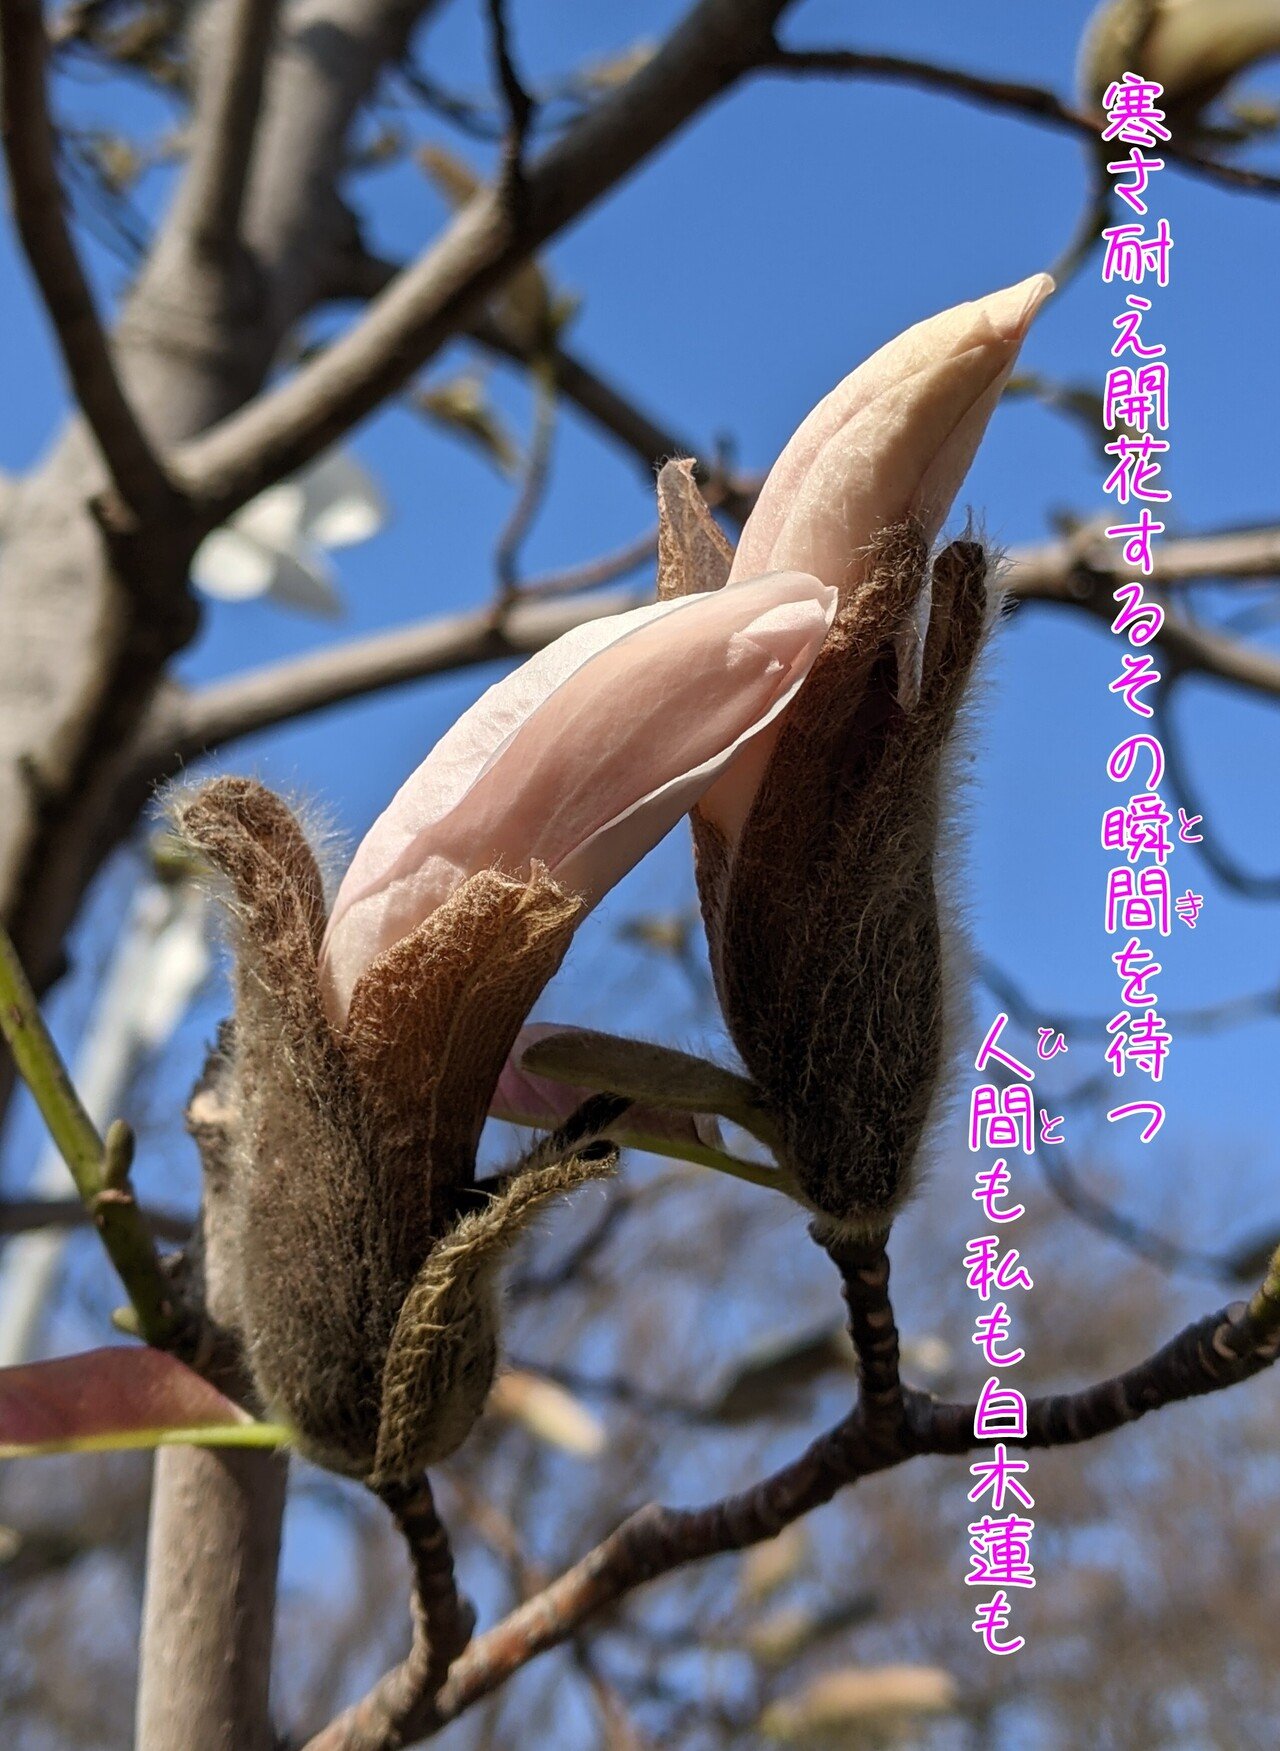 白木蓮の蕾の写真で一首 開花する瞬間を待つ 柘榴 Note